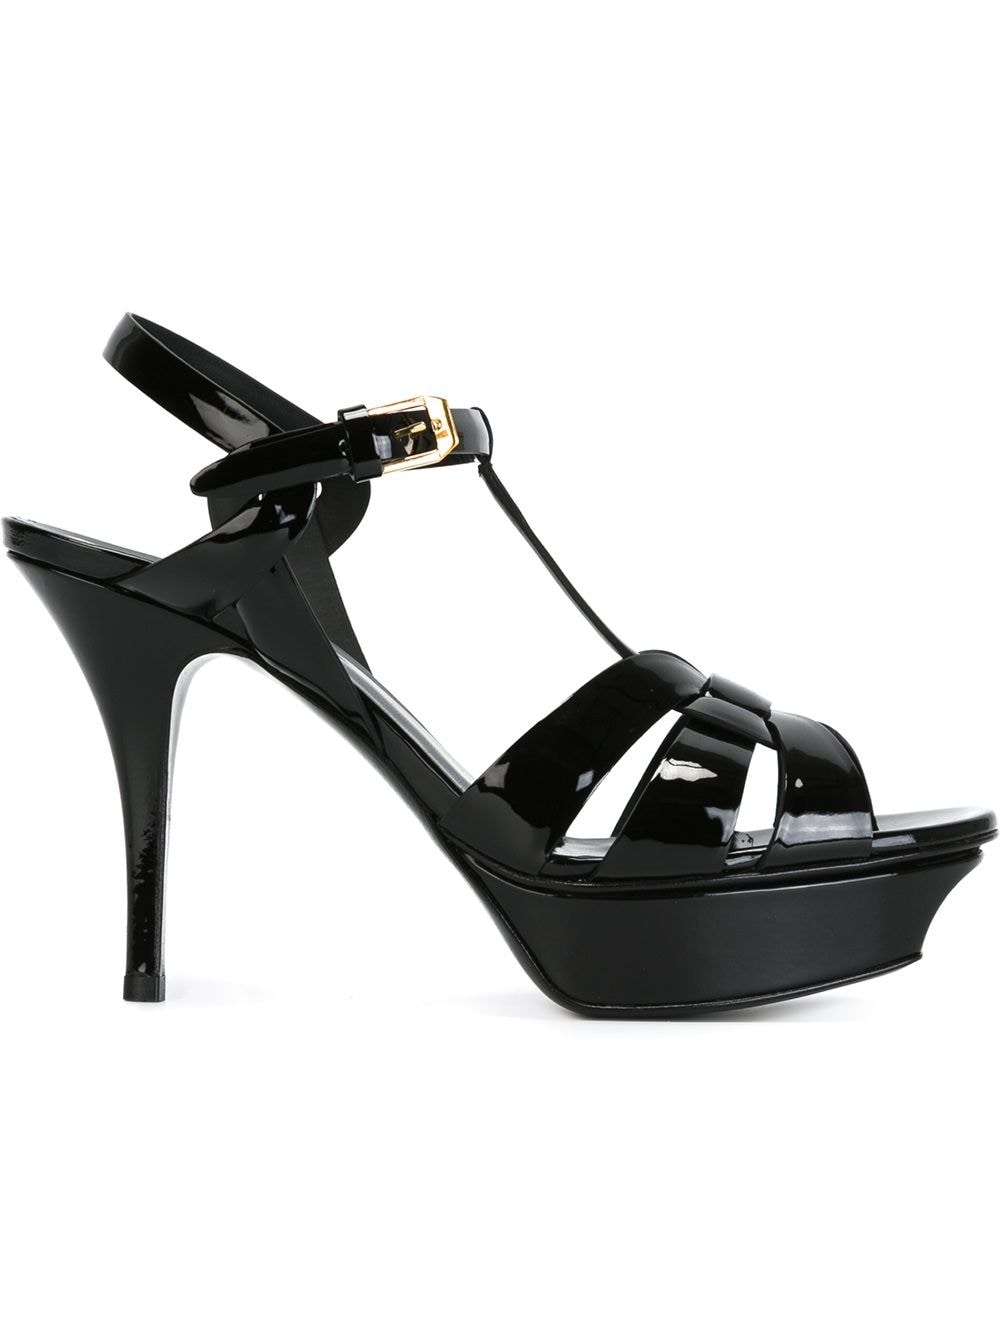 Tribute Patent Leather Sandals дамски обувки Saint Laurent 843753226_35